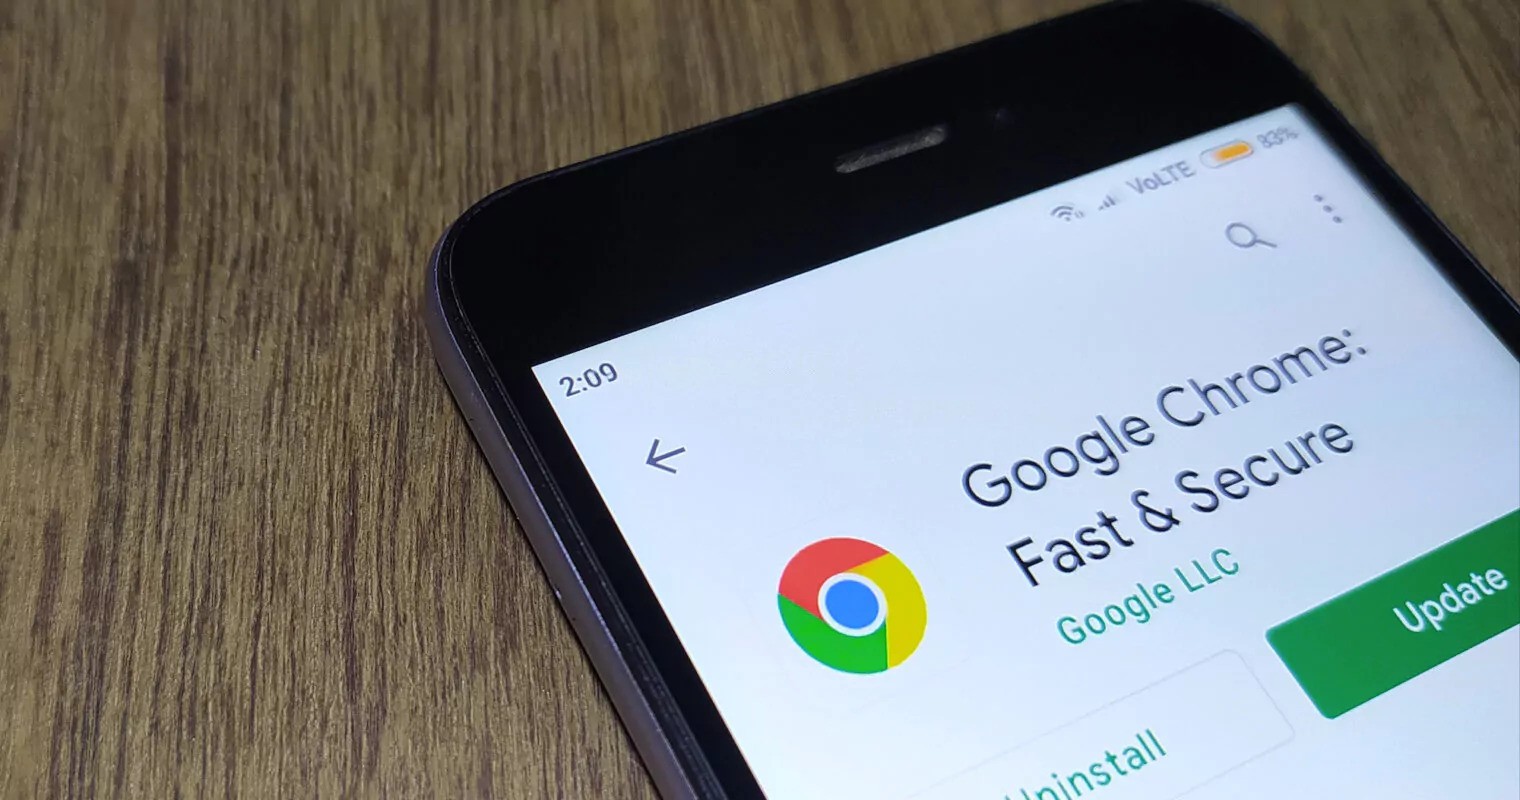 Google Chrome cập nhật 4 tính năng mới trên di động